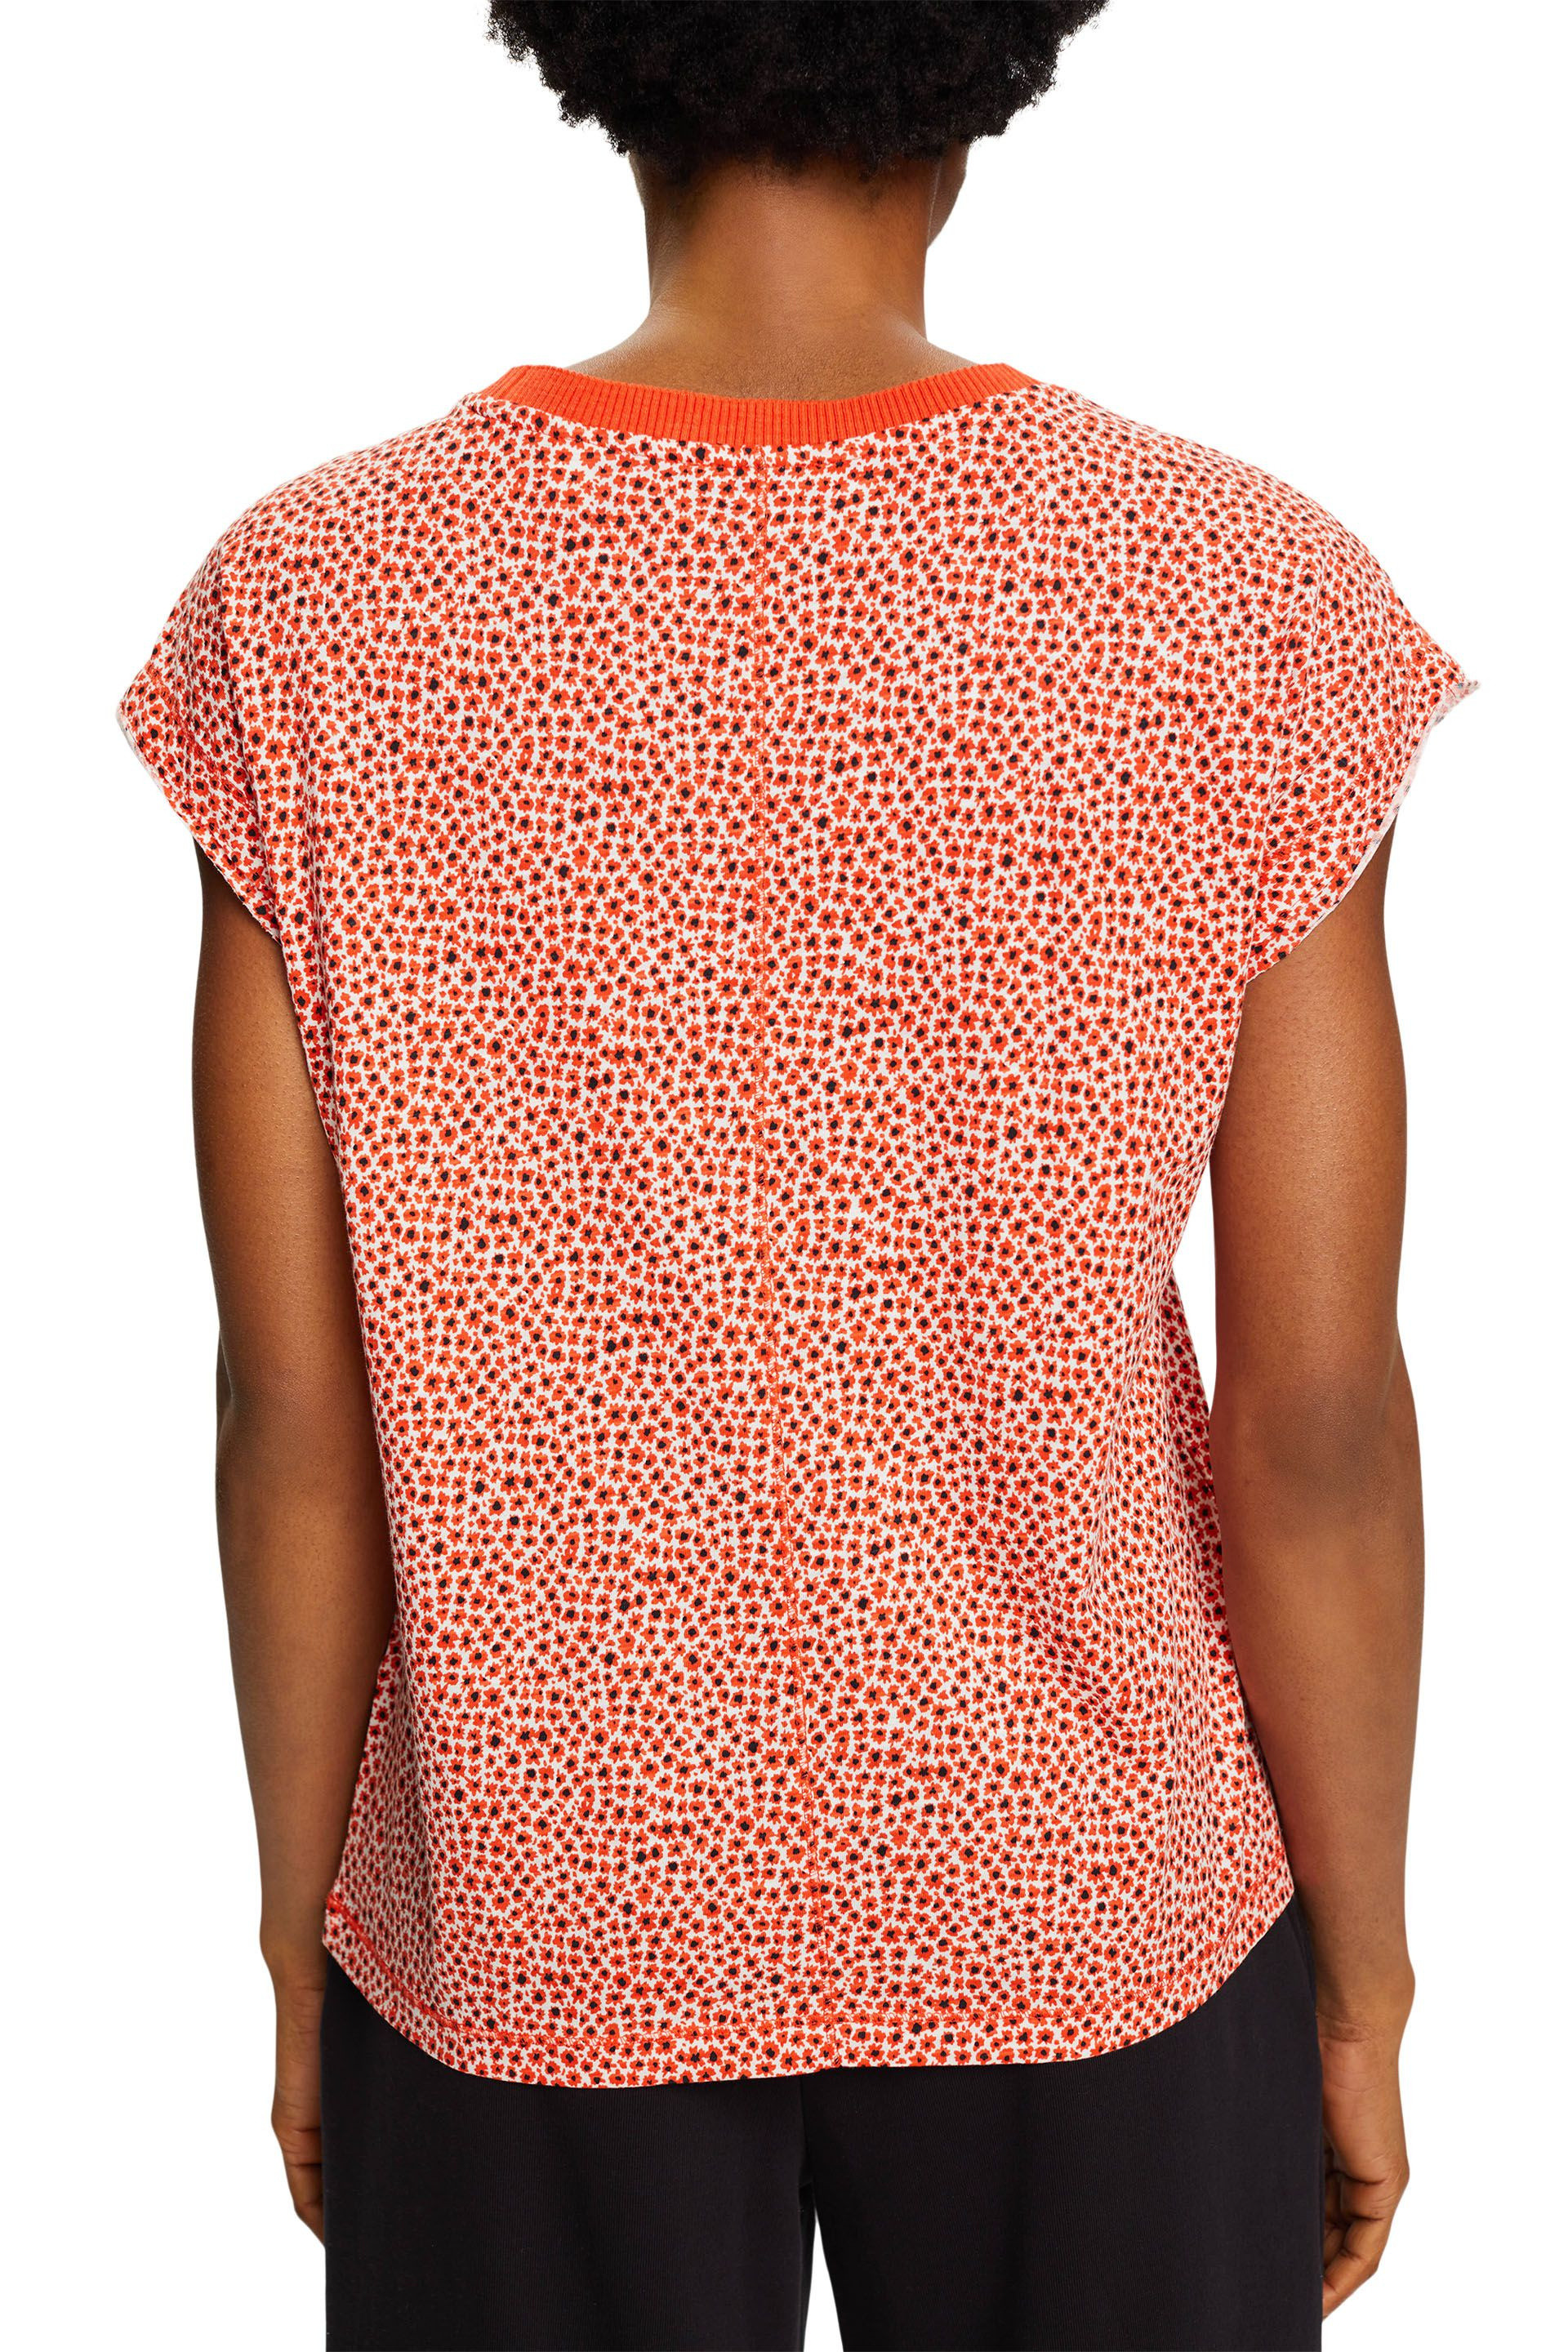 Esprit - T-shirt with all over floral motif, Orange, large image number 3